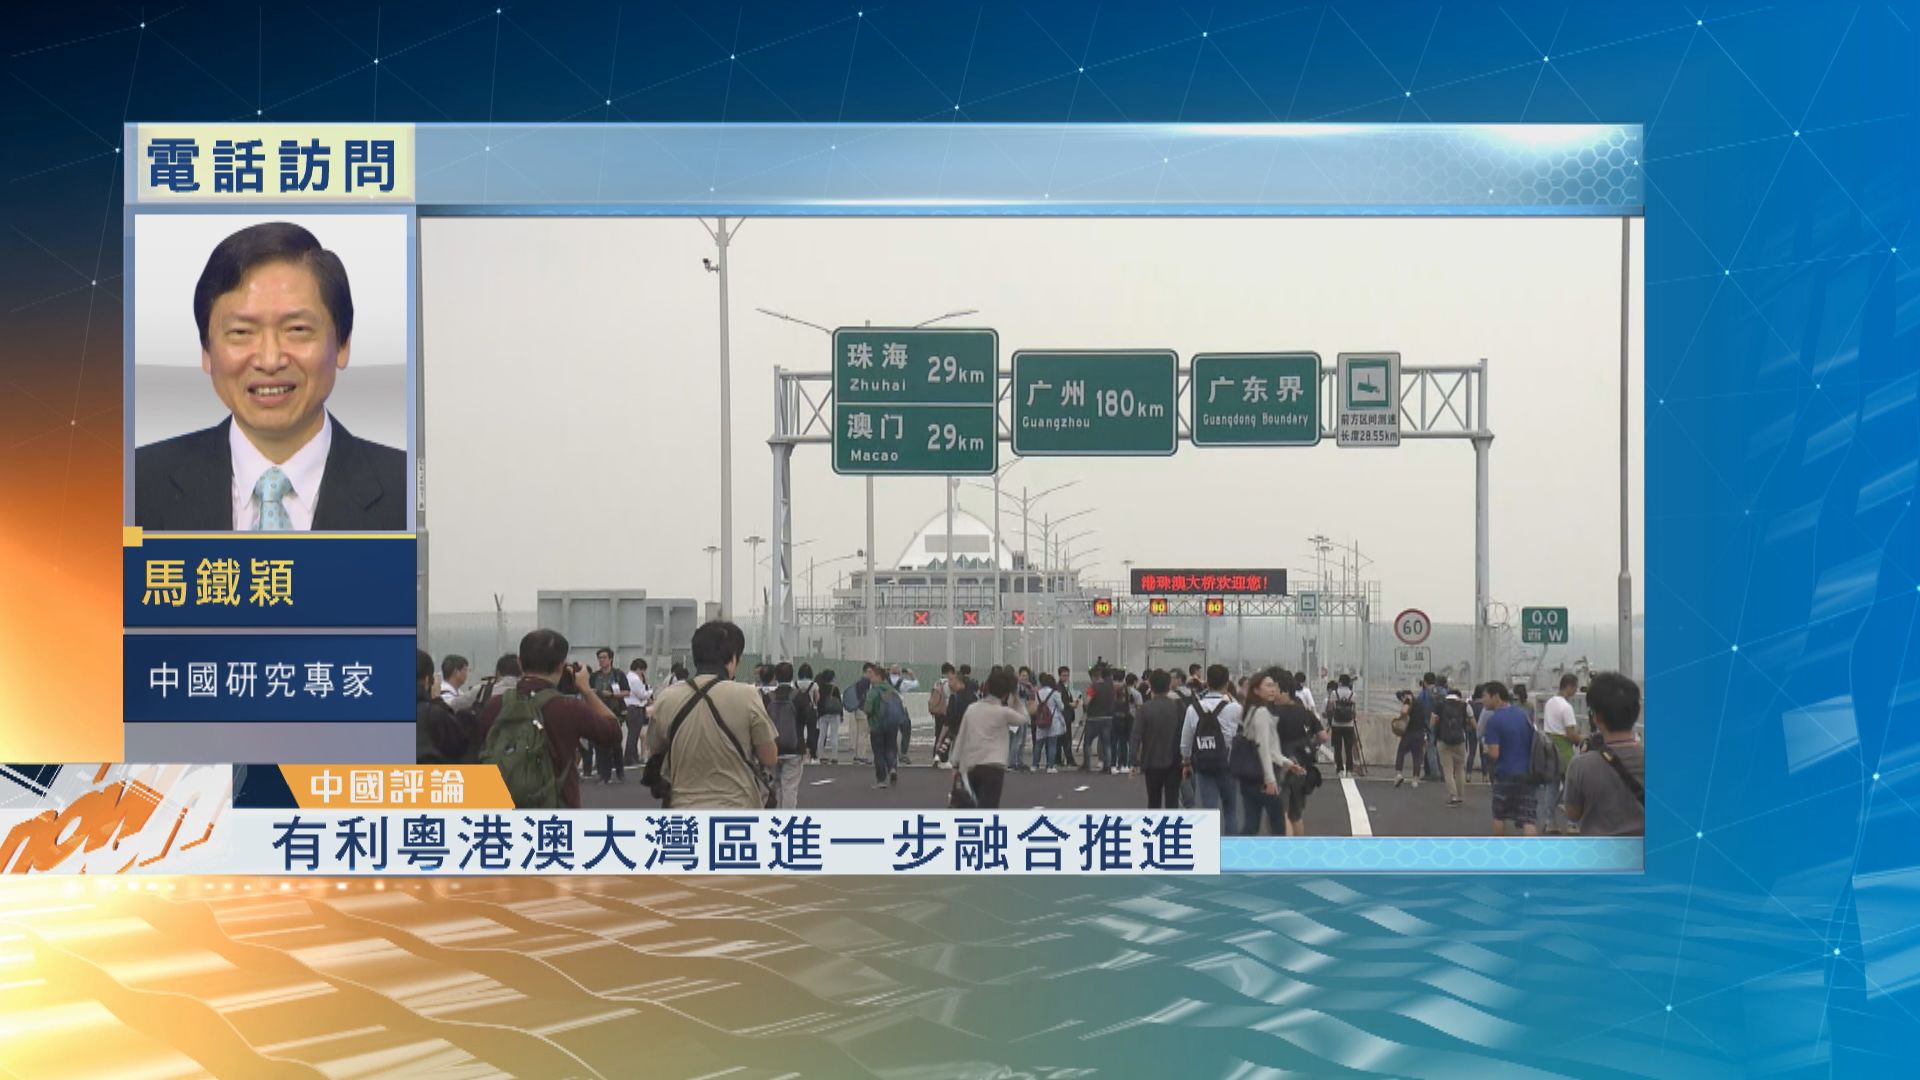 【中國評論】港珠澳大橋明日舉行開通儀式